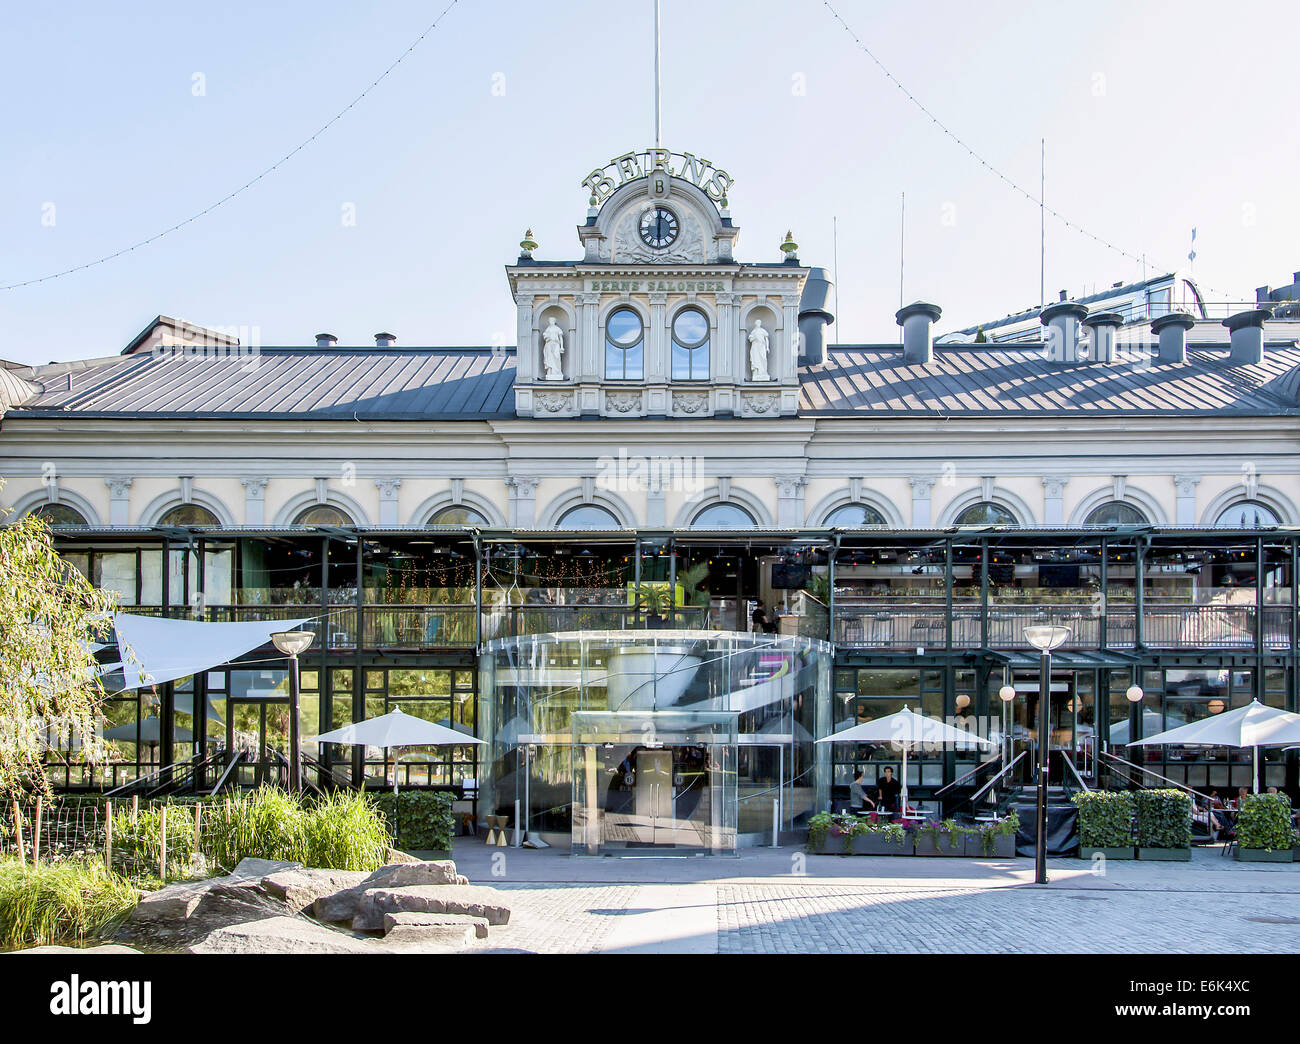 Berns Salonger, Restaurant und Nachtclub, Stockholm, Schweden Stockfoto